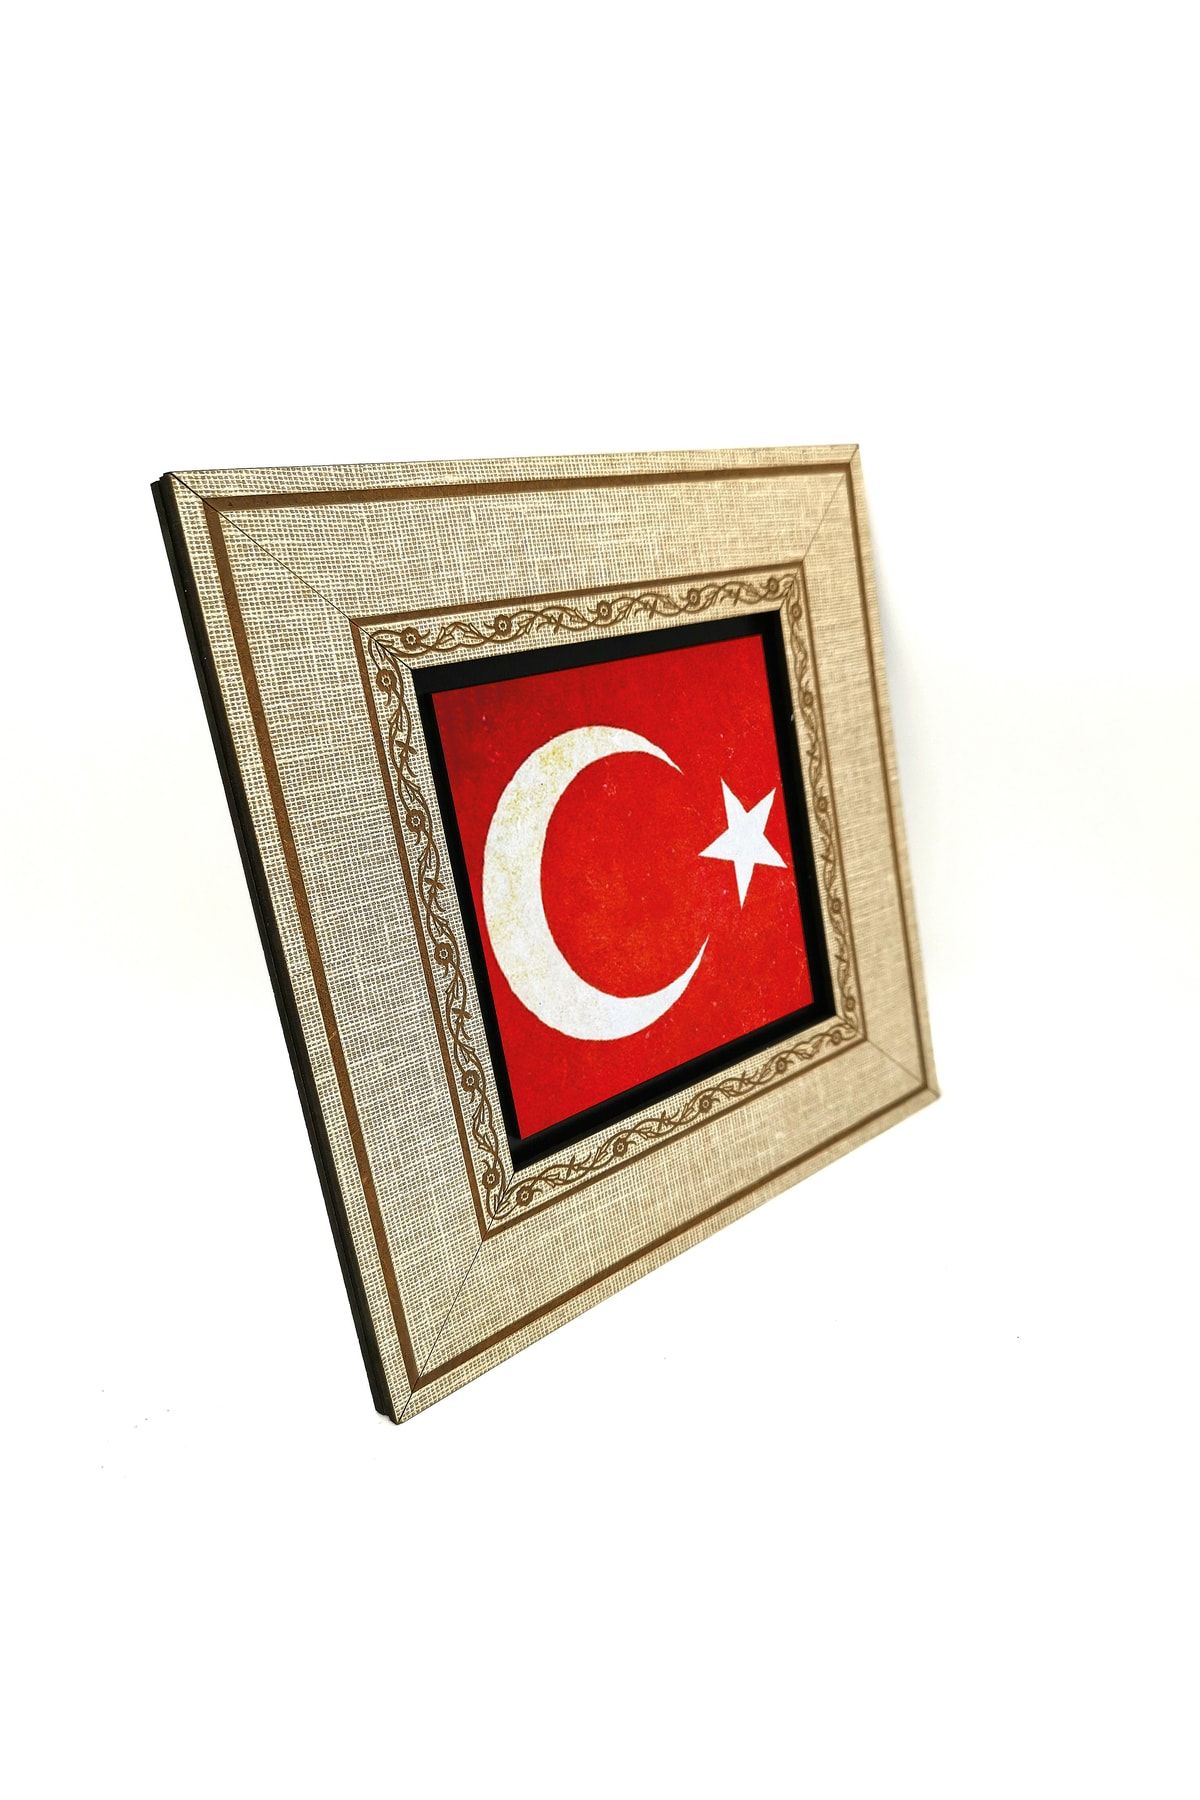 BAKSEPETE Türkiye Bayrağı Baskılı Mdf Çerçeveli Tablo 20cmx20 Cm Krt-098